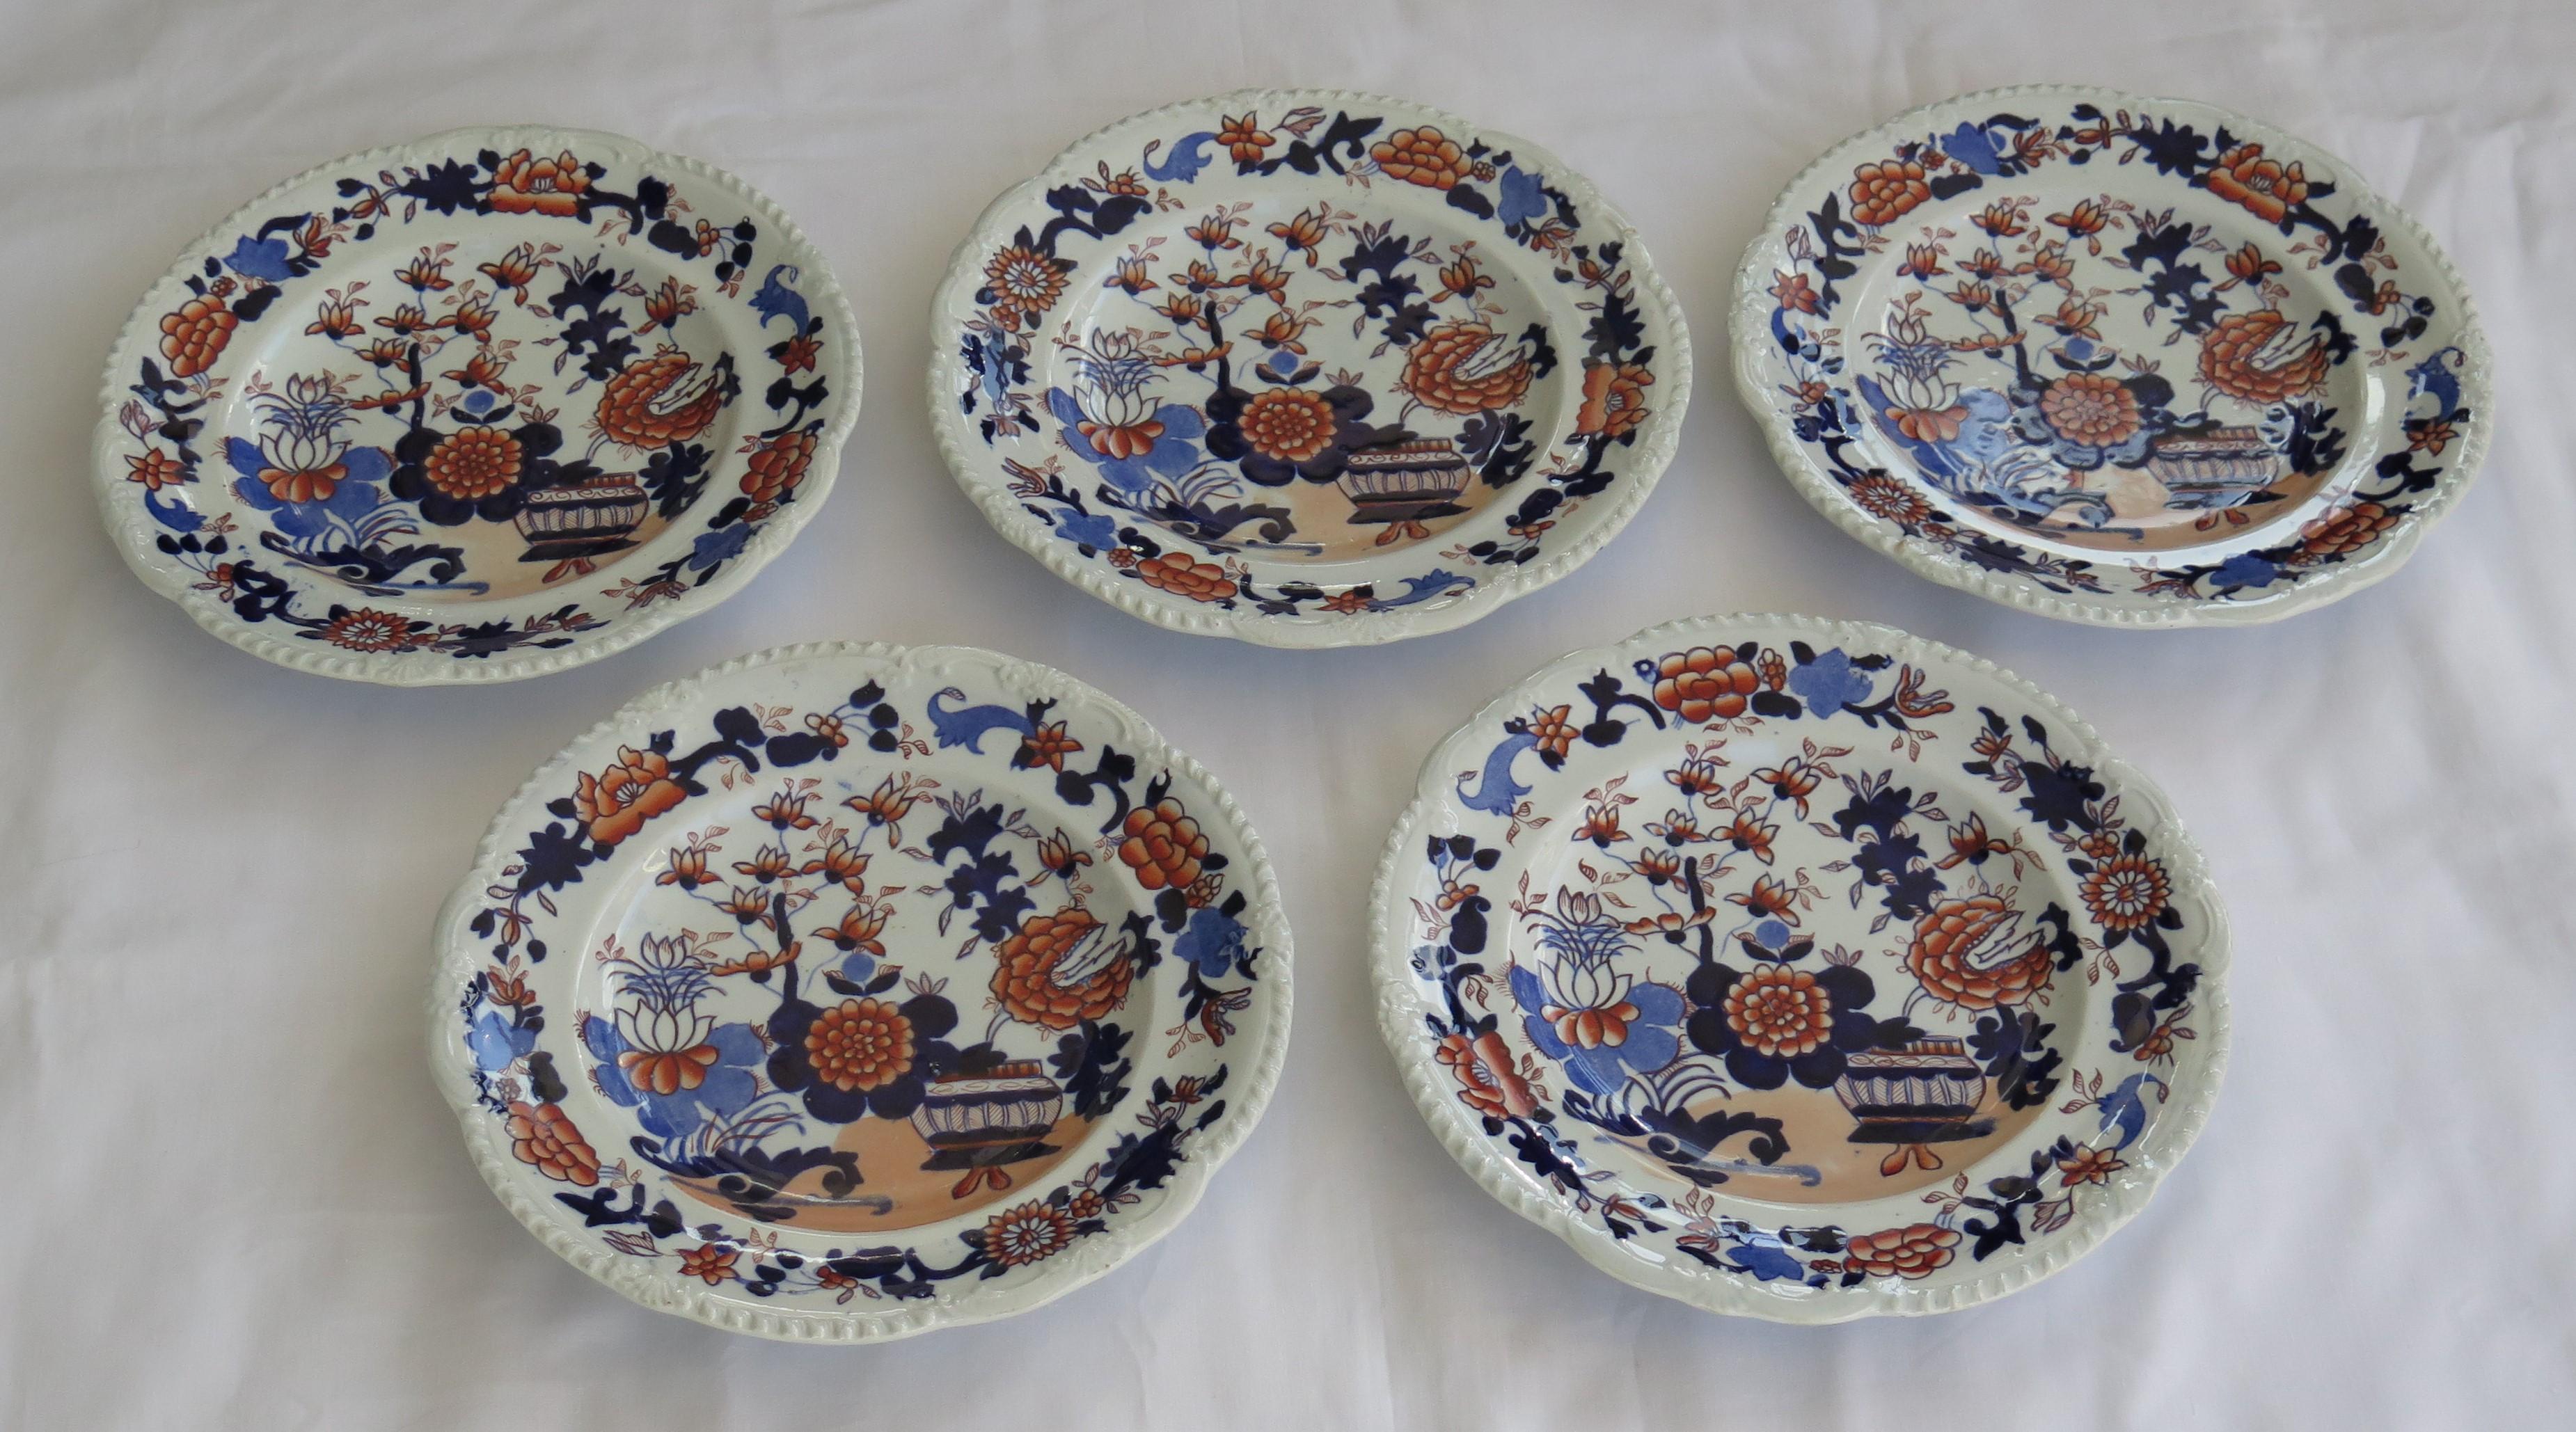 Il s'agit d'un bon ensemble de cinq assiettes à dessert anciennes, toutes dans le motif Basket Japan, fabriquées par Mason's Ironstone, Lane's, Angleterre et datant d'environ 1815-1820.

Les assiettes sont bien remplies, de forme circulaire, avec un